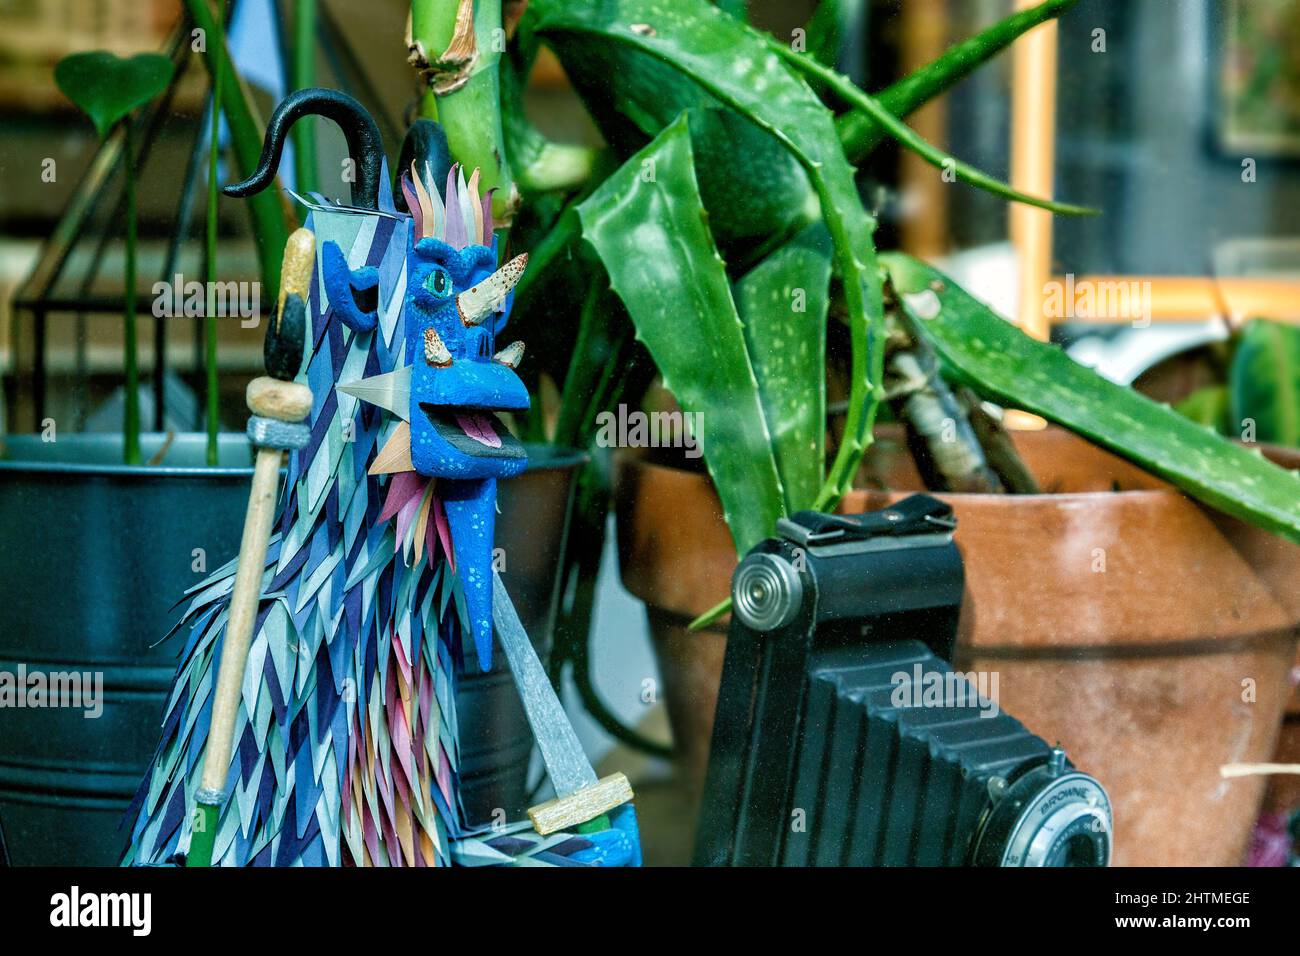 Neben Pflanzentöpfen und einer alten Kamera steht in einem Schaufenster ein Modell einer seltsamen gehörnten Kreatur. Stockfoto